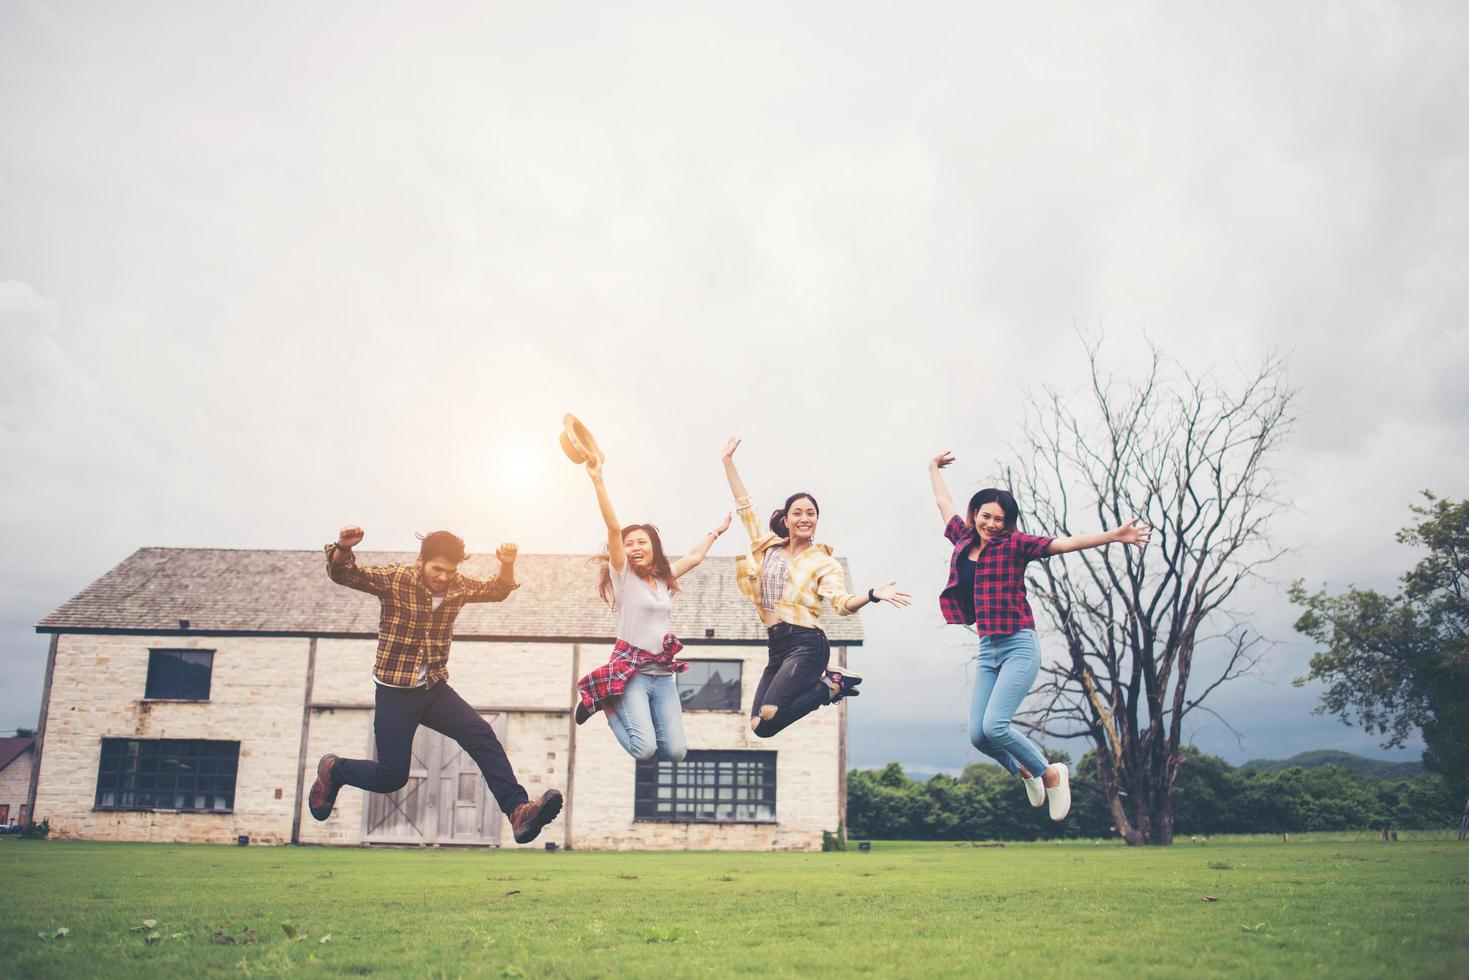 Heureux groupe d'étudiants adolescents sautant dans un parc ensemble photo